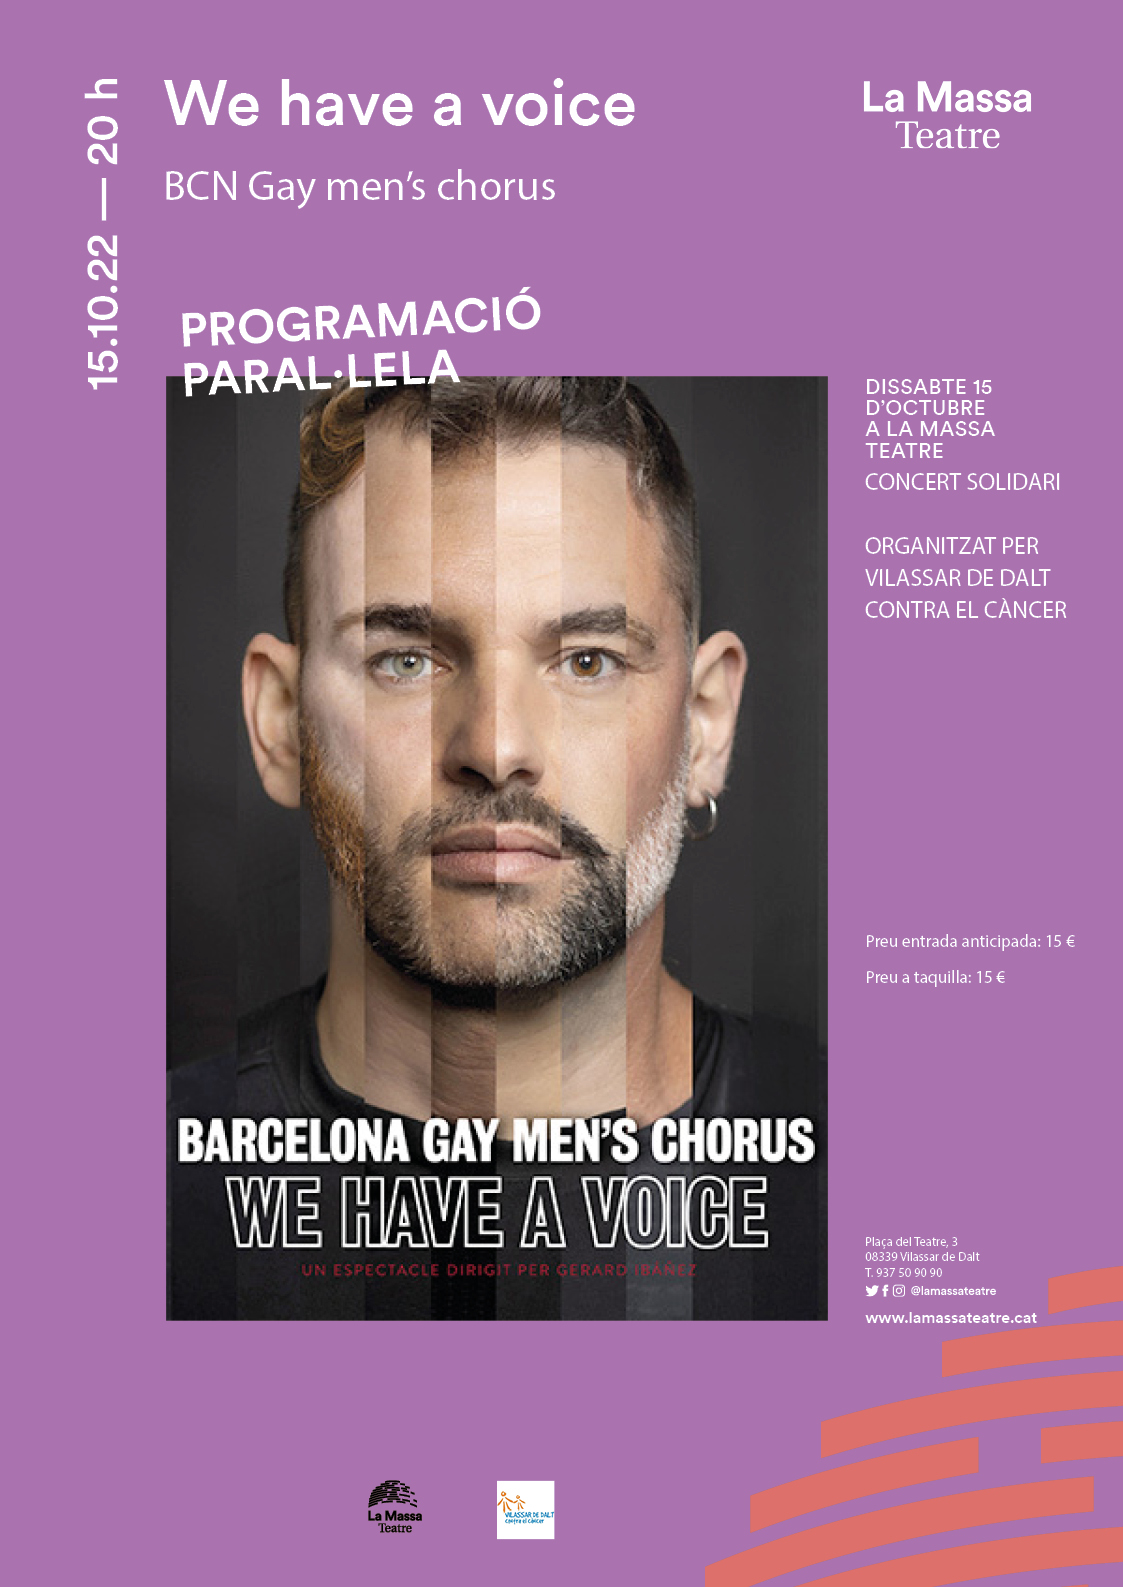 La Massa Teatre: We have a voice